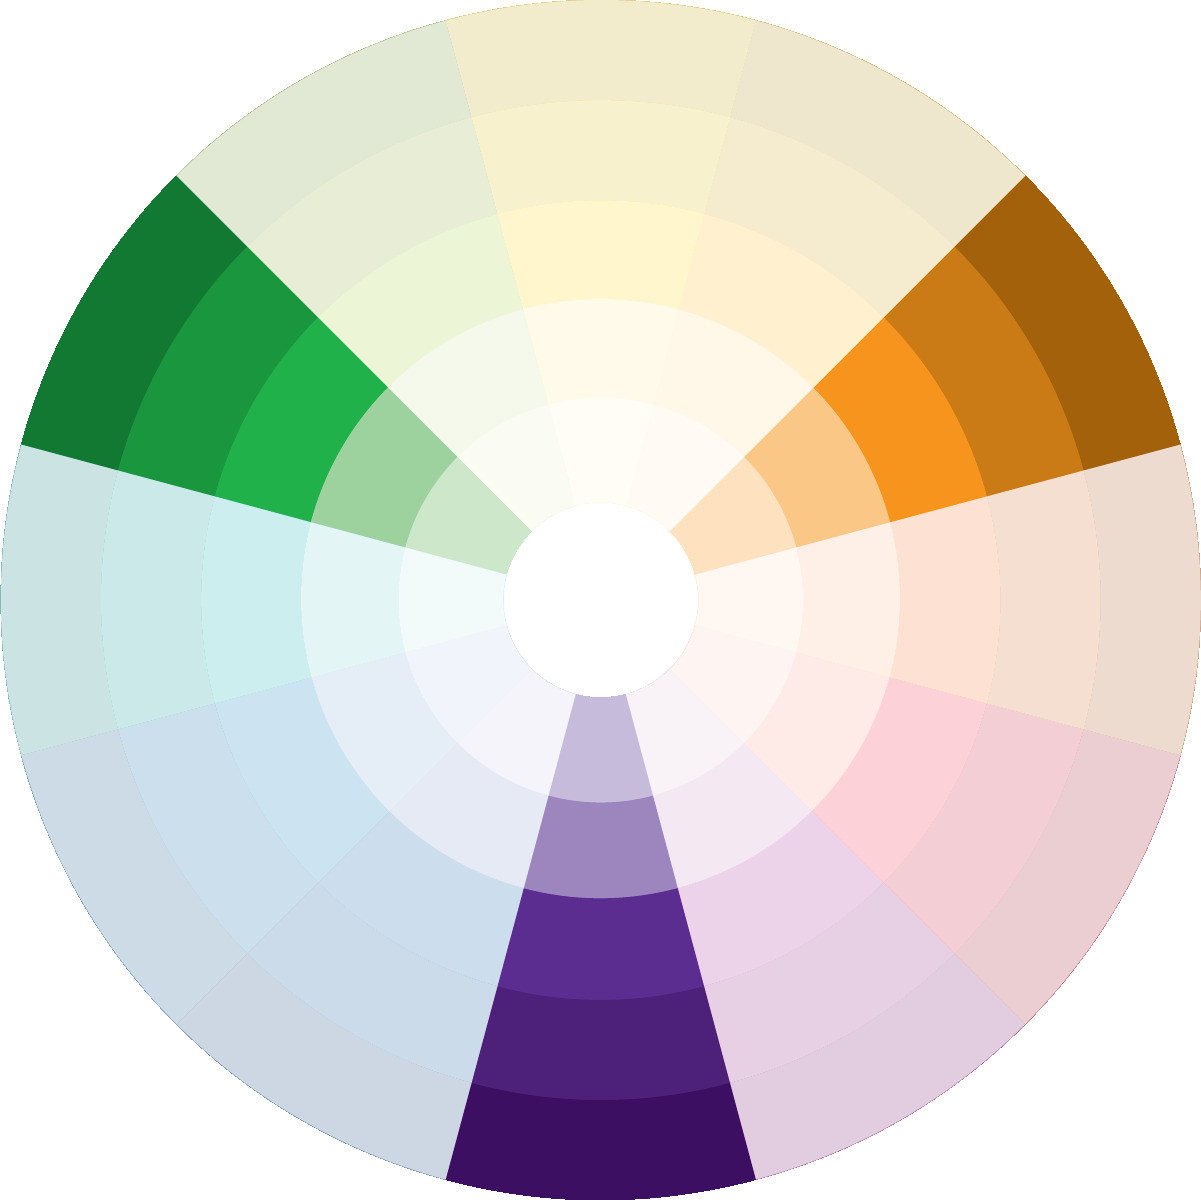 Círculo cromático com as cores verde, laranja e roxo - Técnica do triângulo com três cores diferentes que combinam.